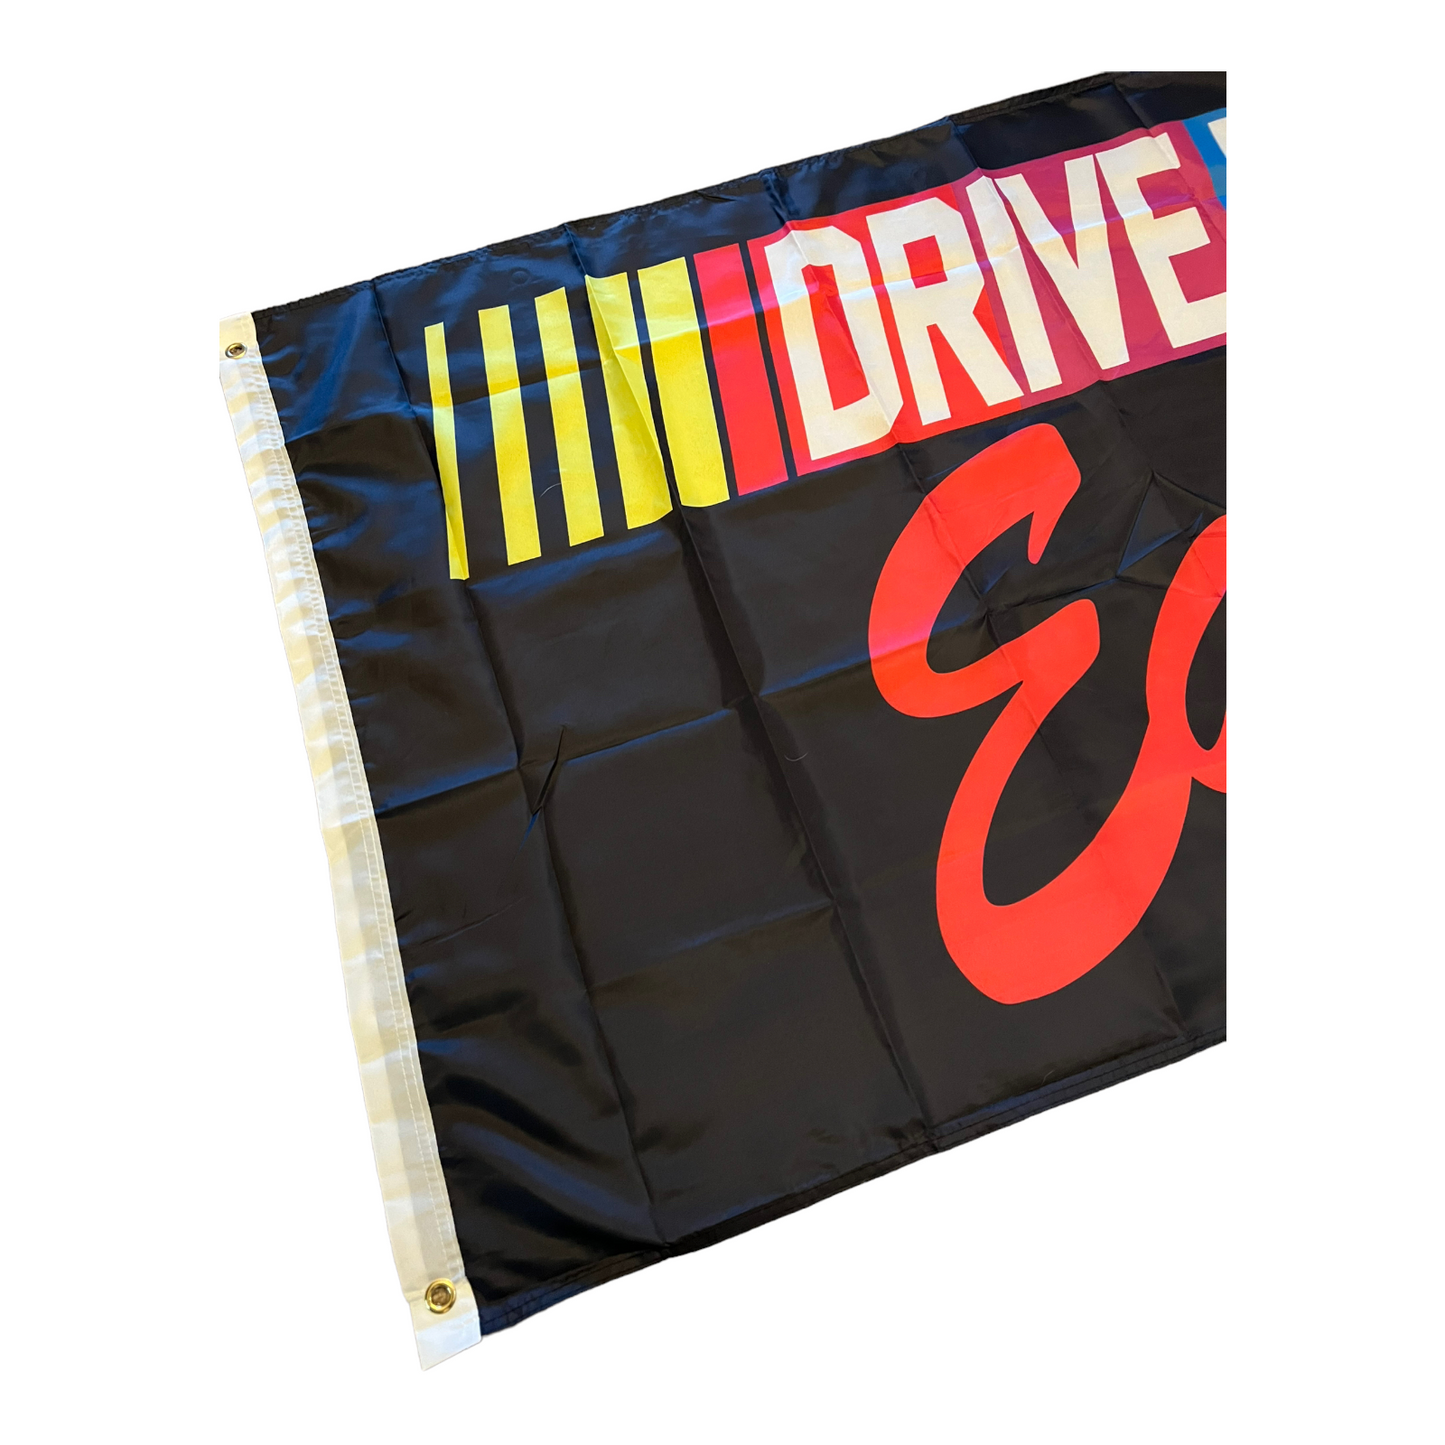 Drive Fast Eat Ass 3x5 Wall Decor Banner Flag